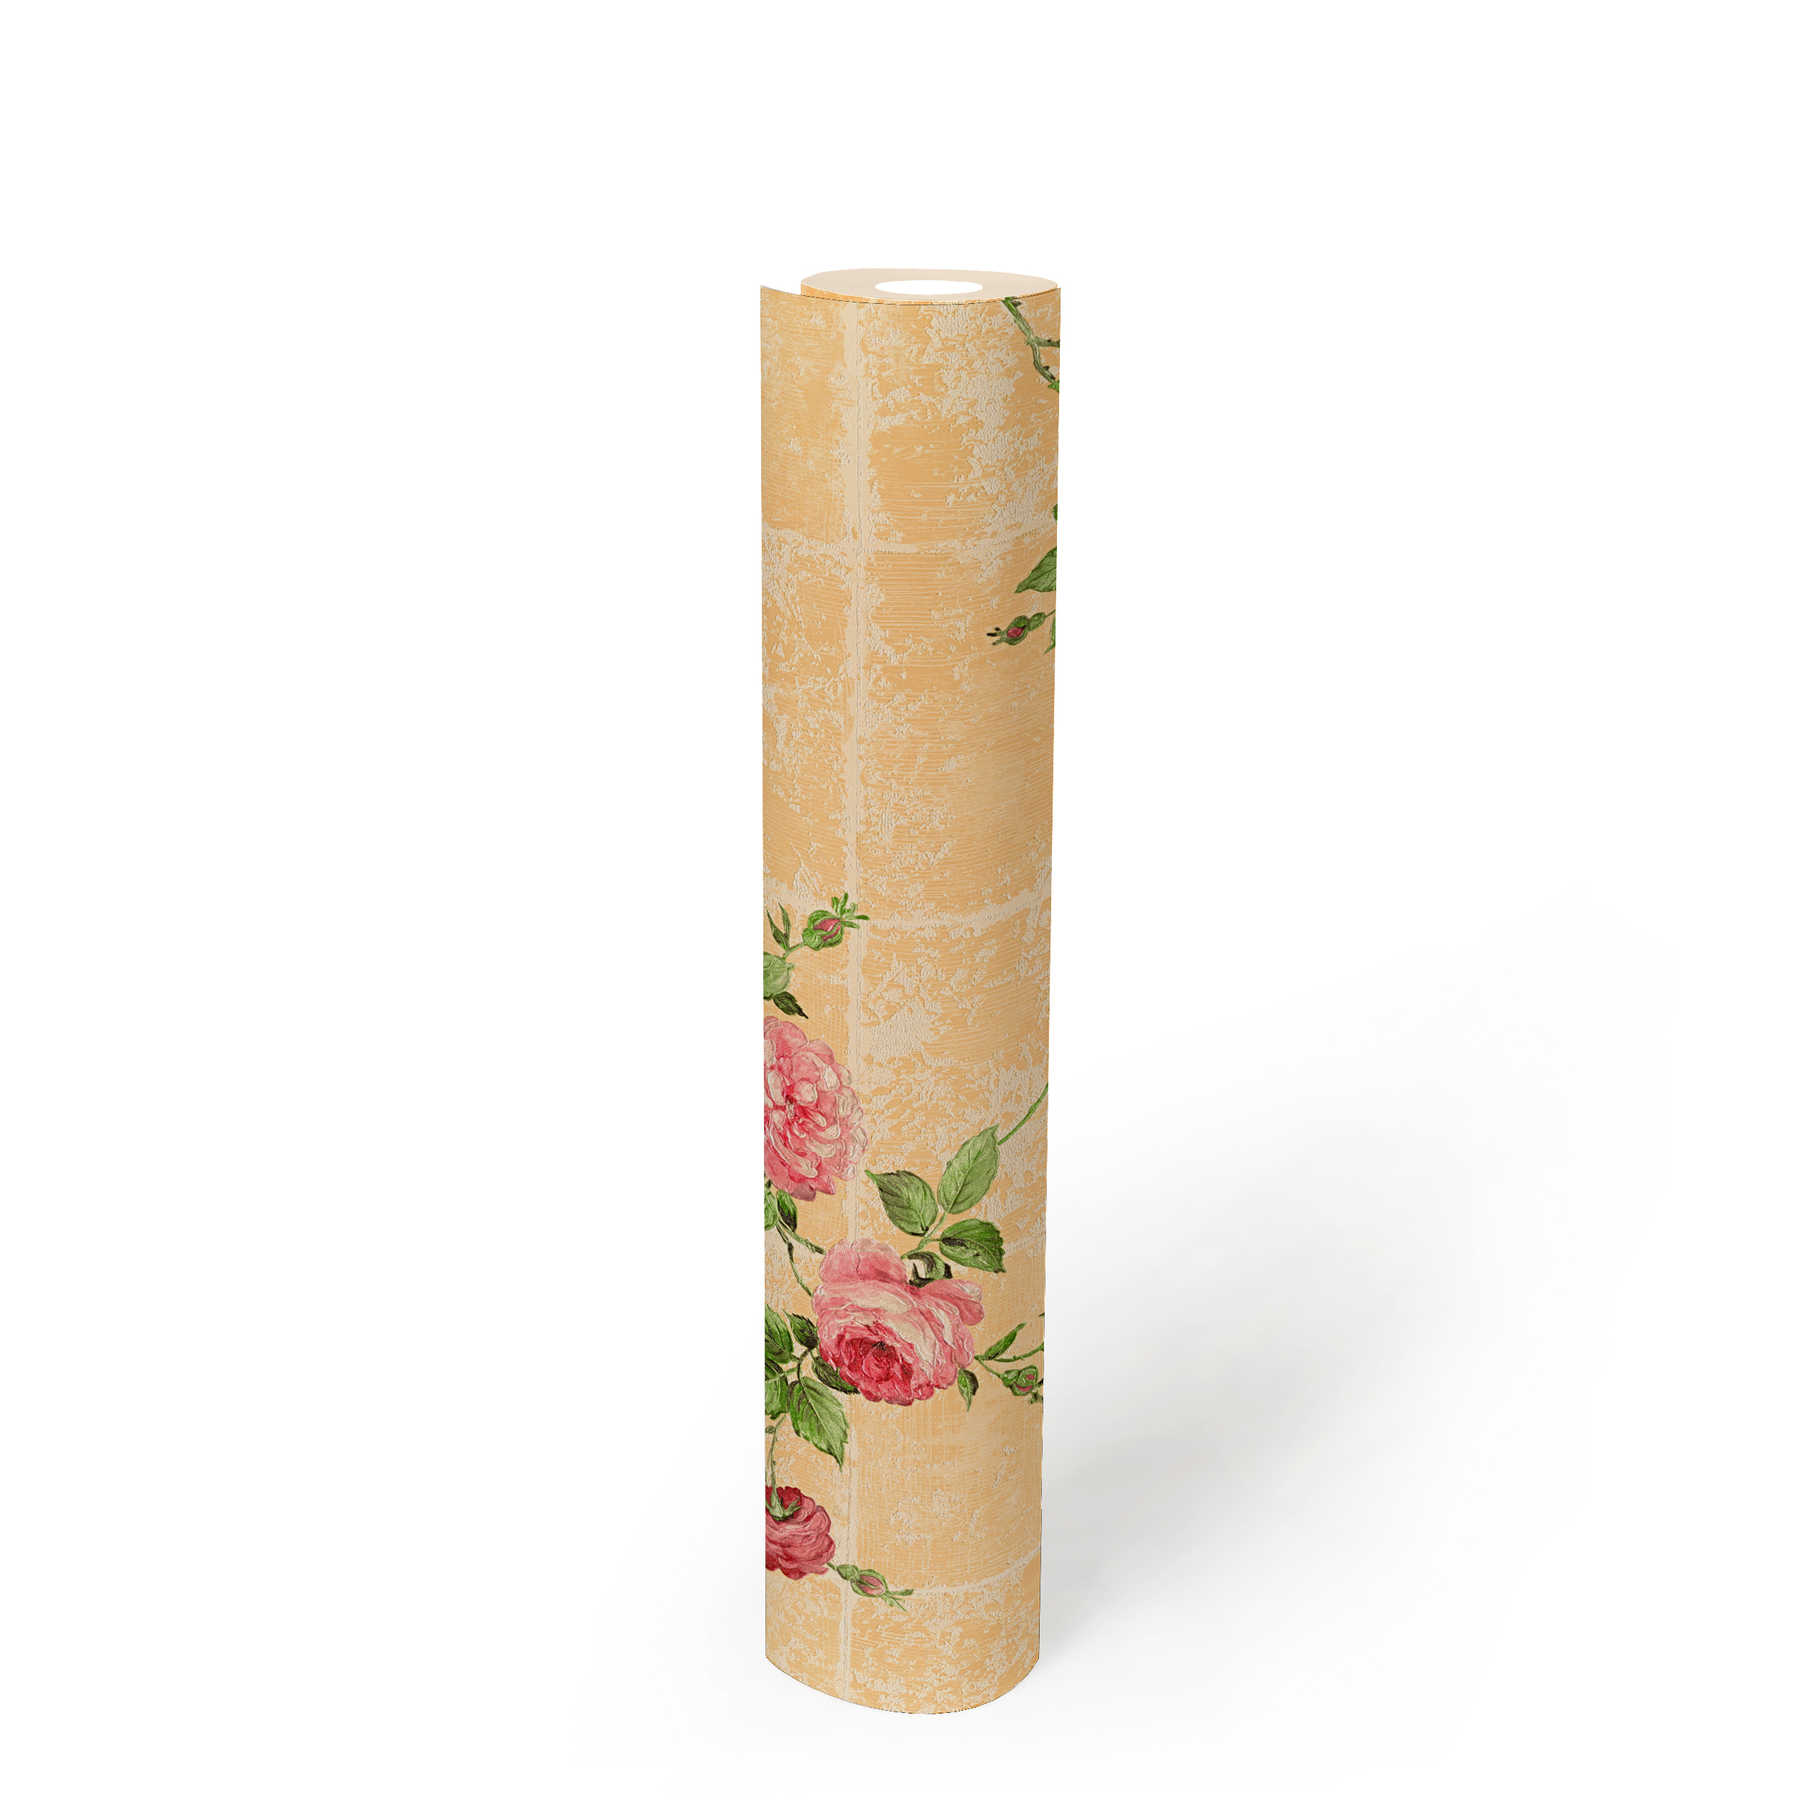             Fliesenoptik Tapete rustikal mit Rosen – Bunt
        